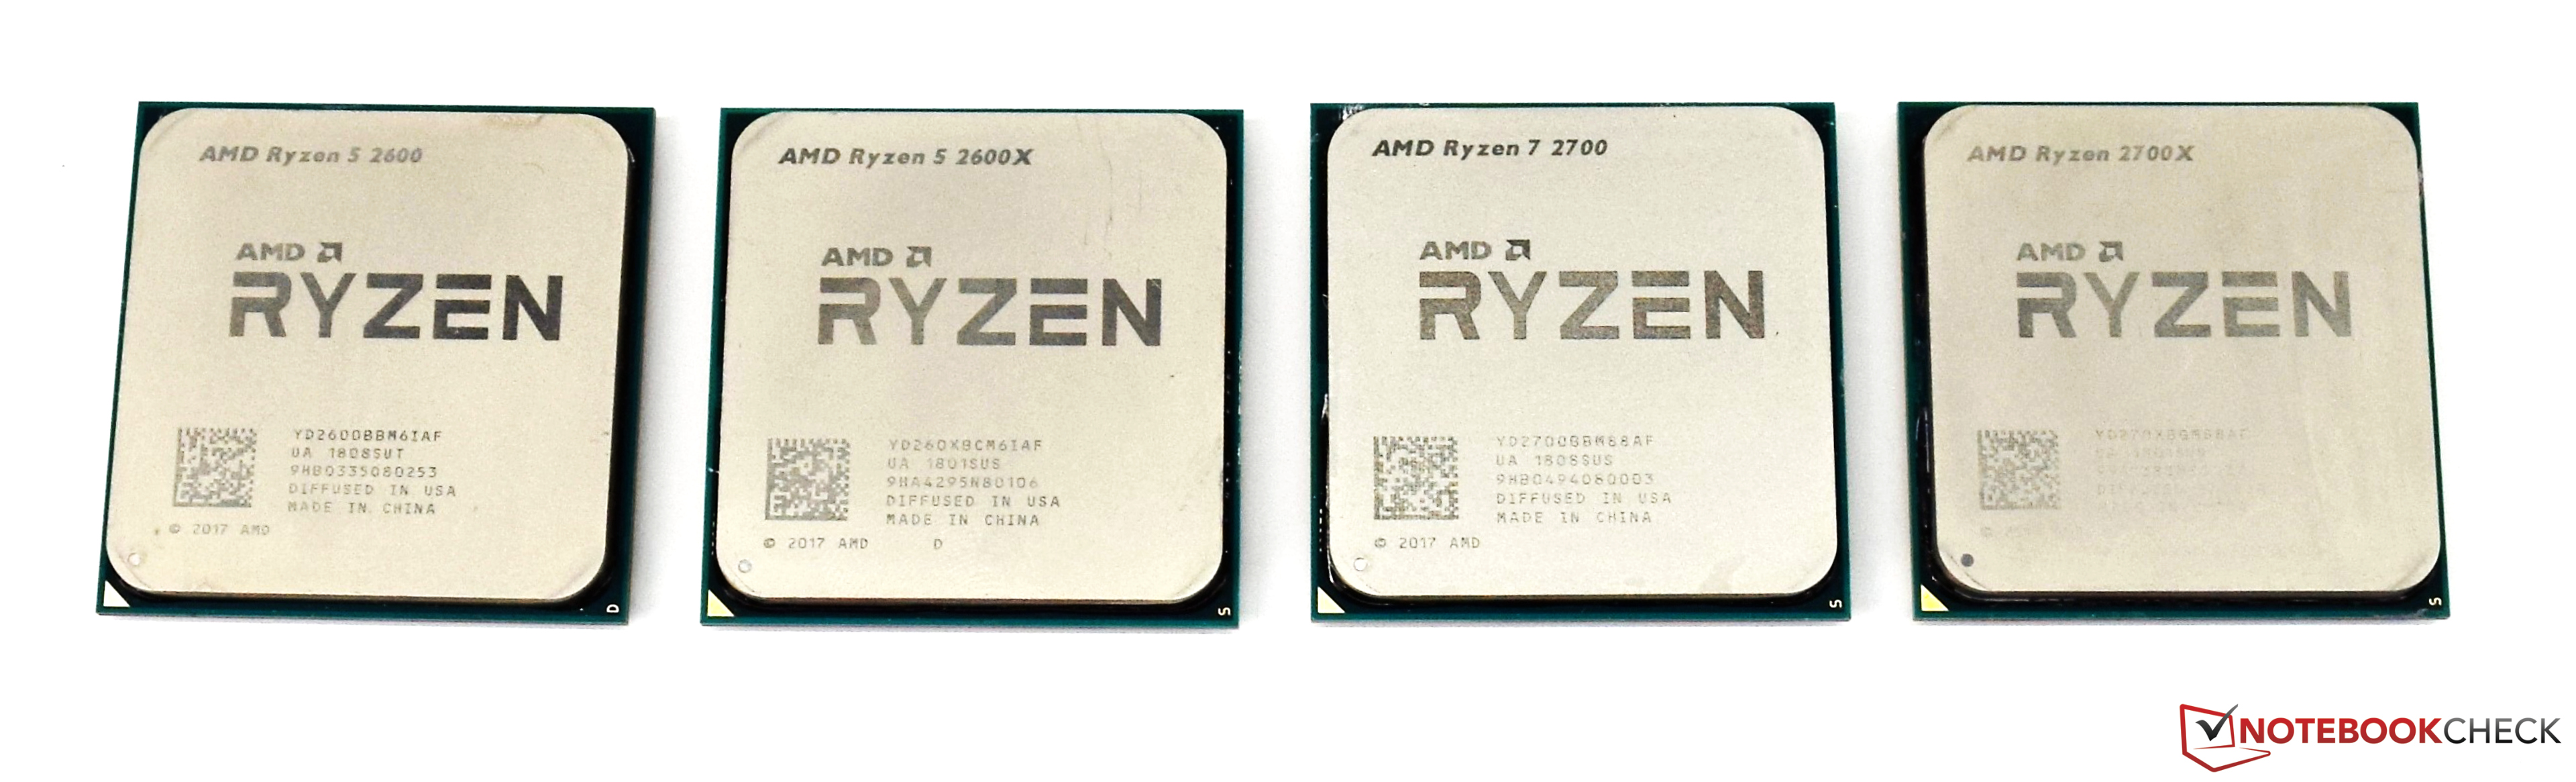 Тест райзен 5. AMD Ryzen 5 2600. Процессор АМД райзен 5 5600х. Архитектура Ryzen 5 2600. Hexa Core Ryzen 5 2600.